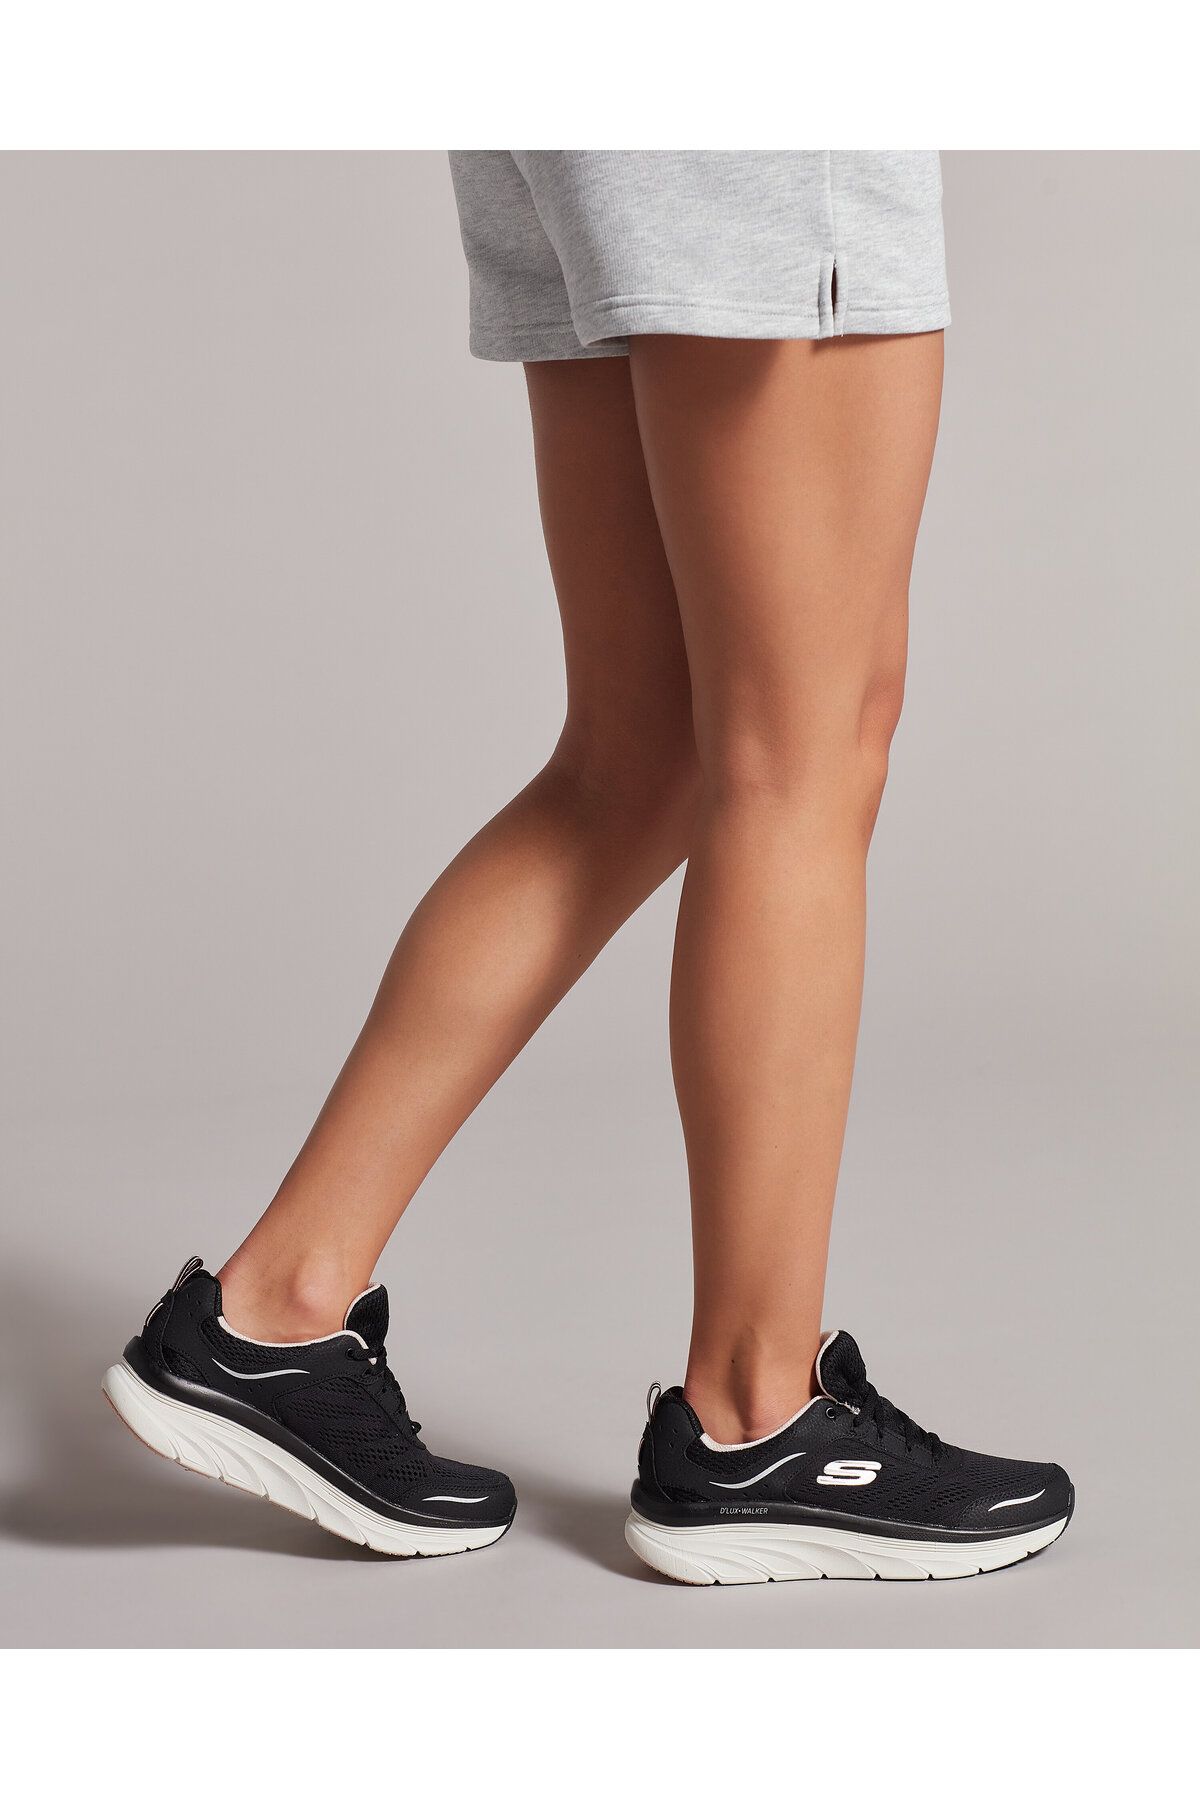 کفش ورزشی مشکی زنانه  اسکچرز Skechers (برند آمریکا)